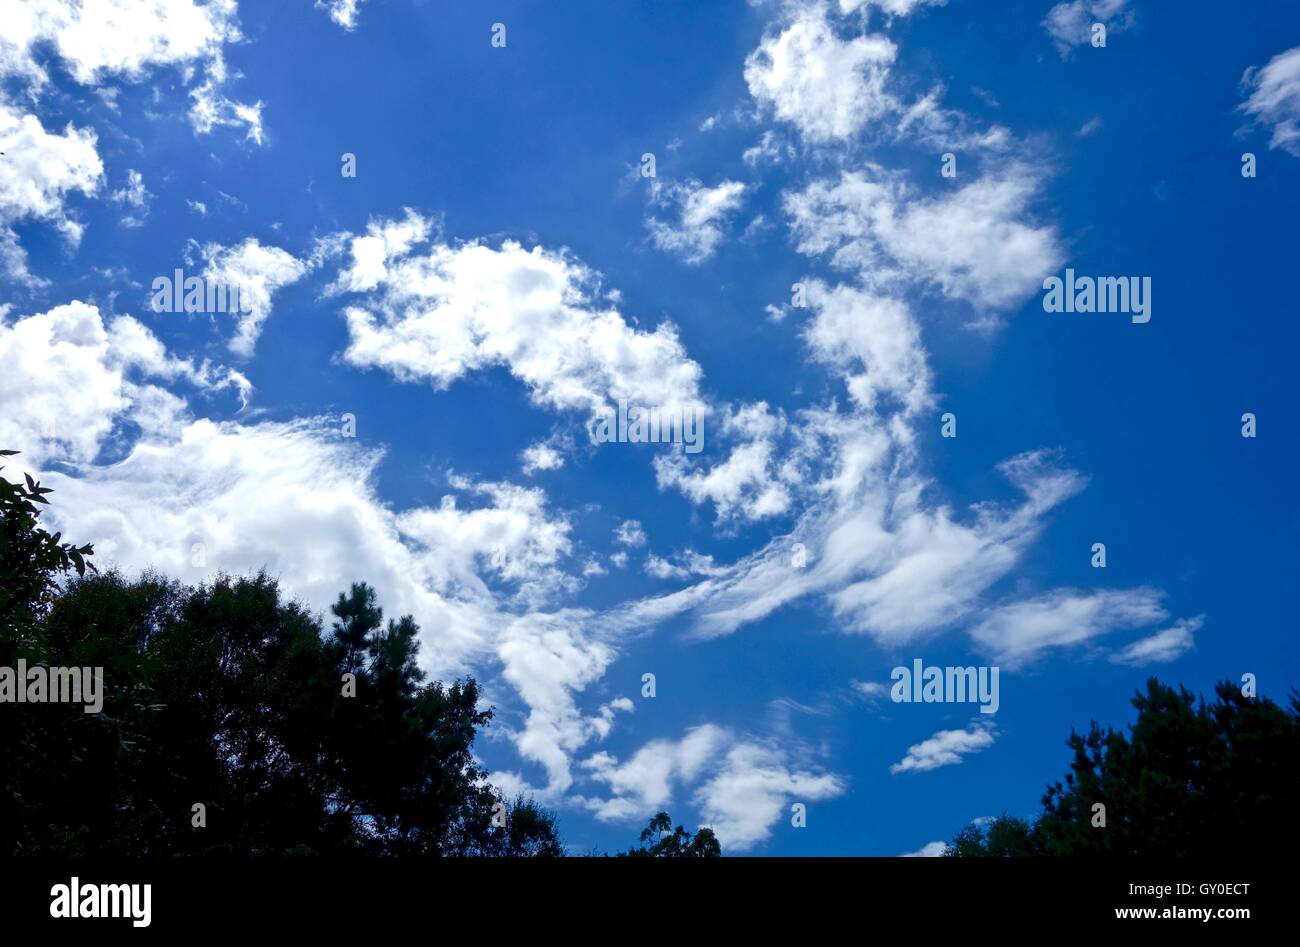 Les nuages tourbillonnant against a blue sky Banque D'Images